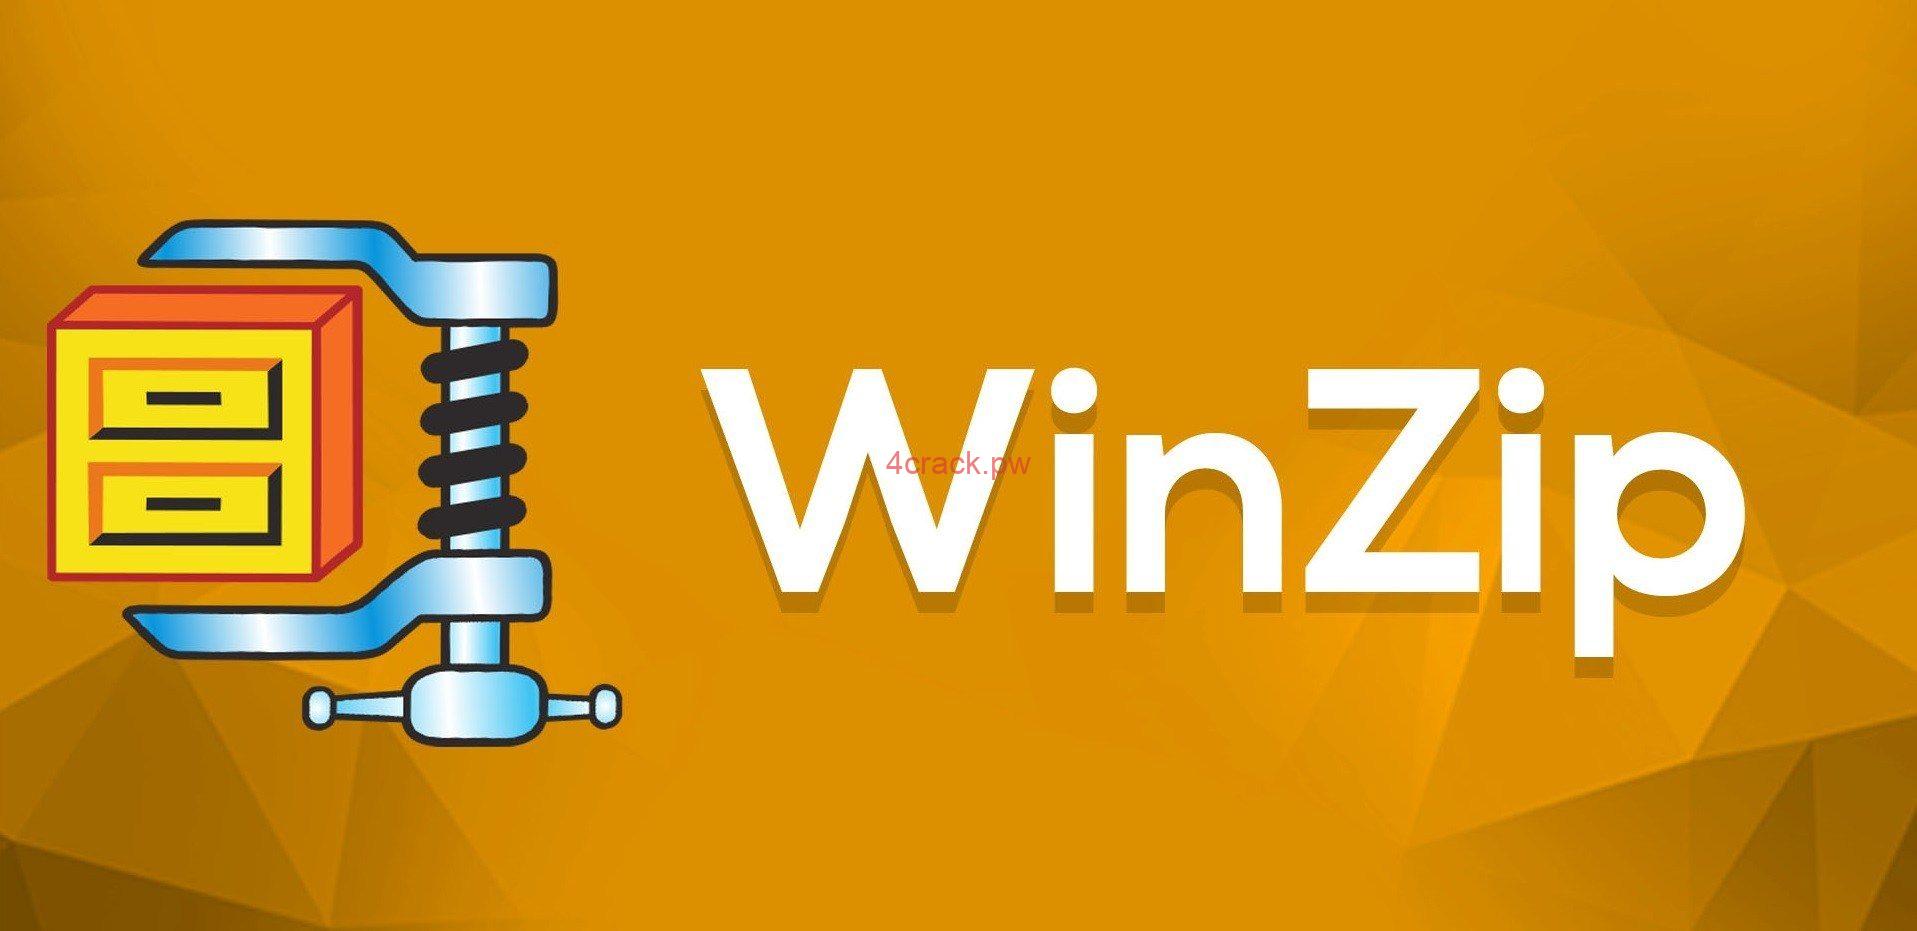 WinZip 25.0 Build 14273 Crack+Keygen Key Free Download 2020 - Cracked